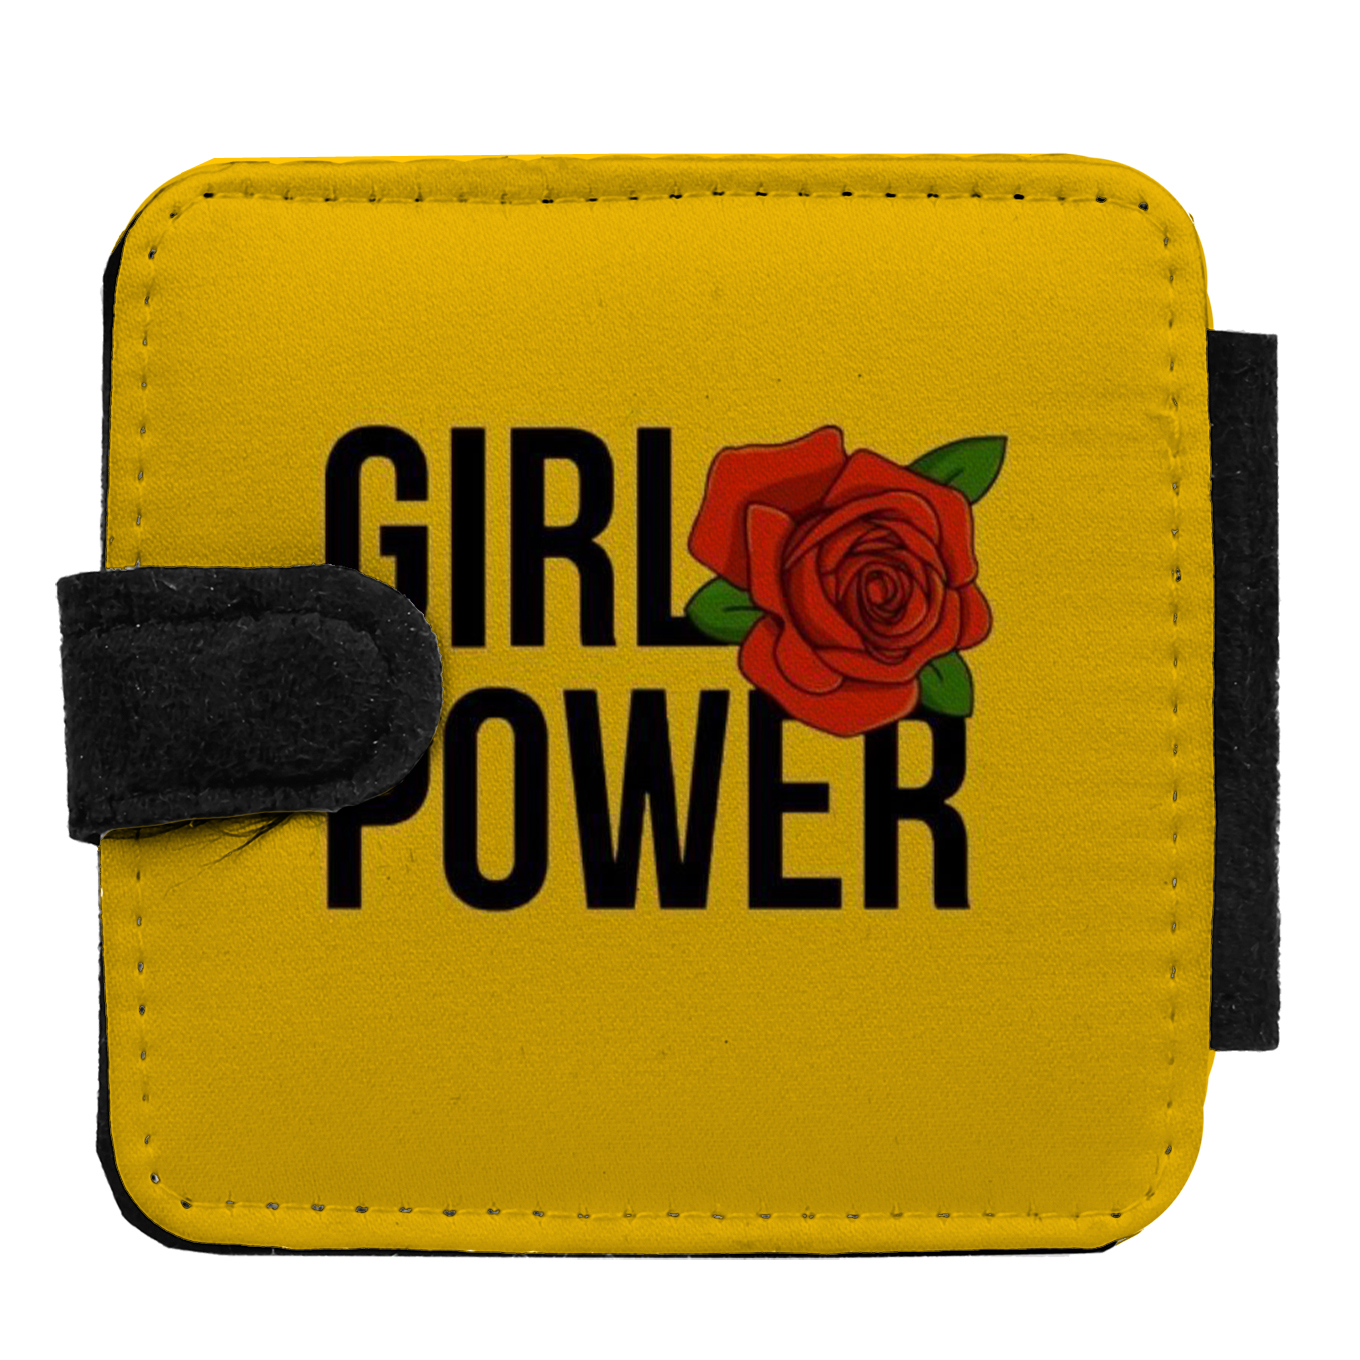 آینه جیبی طرح girl power کد AY06